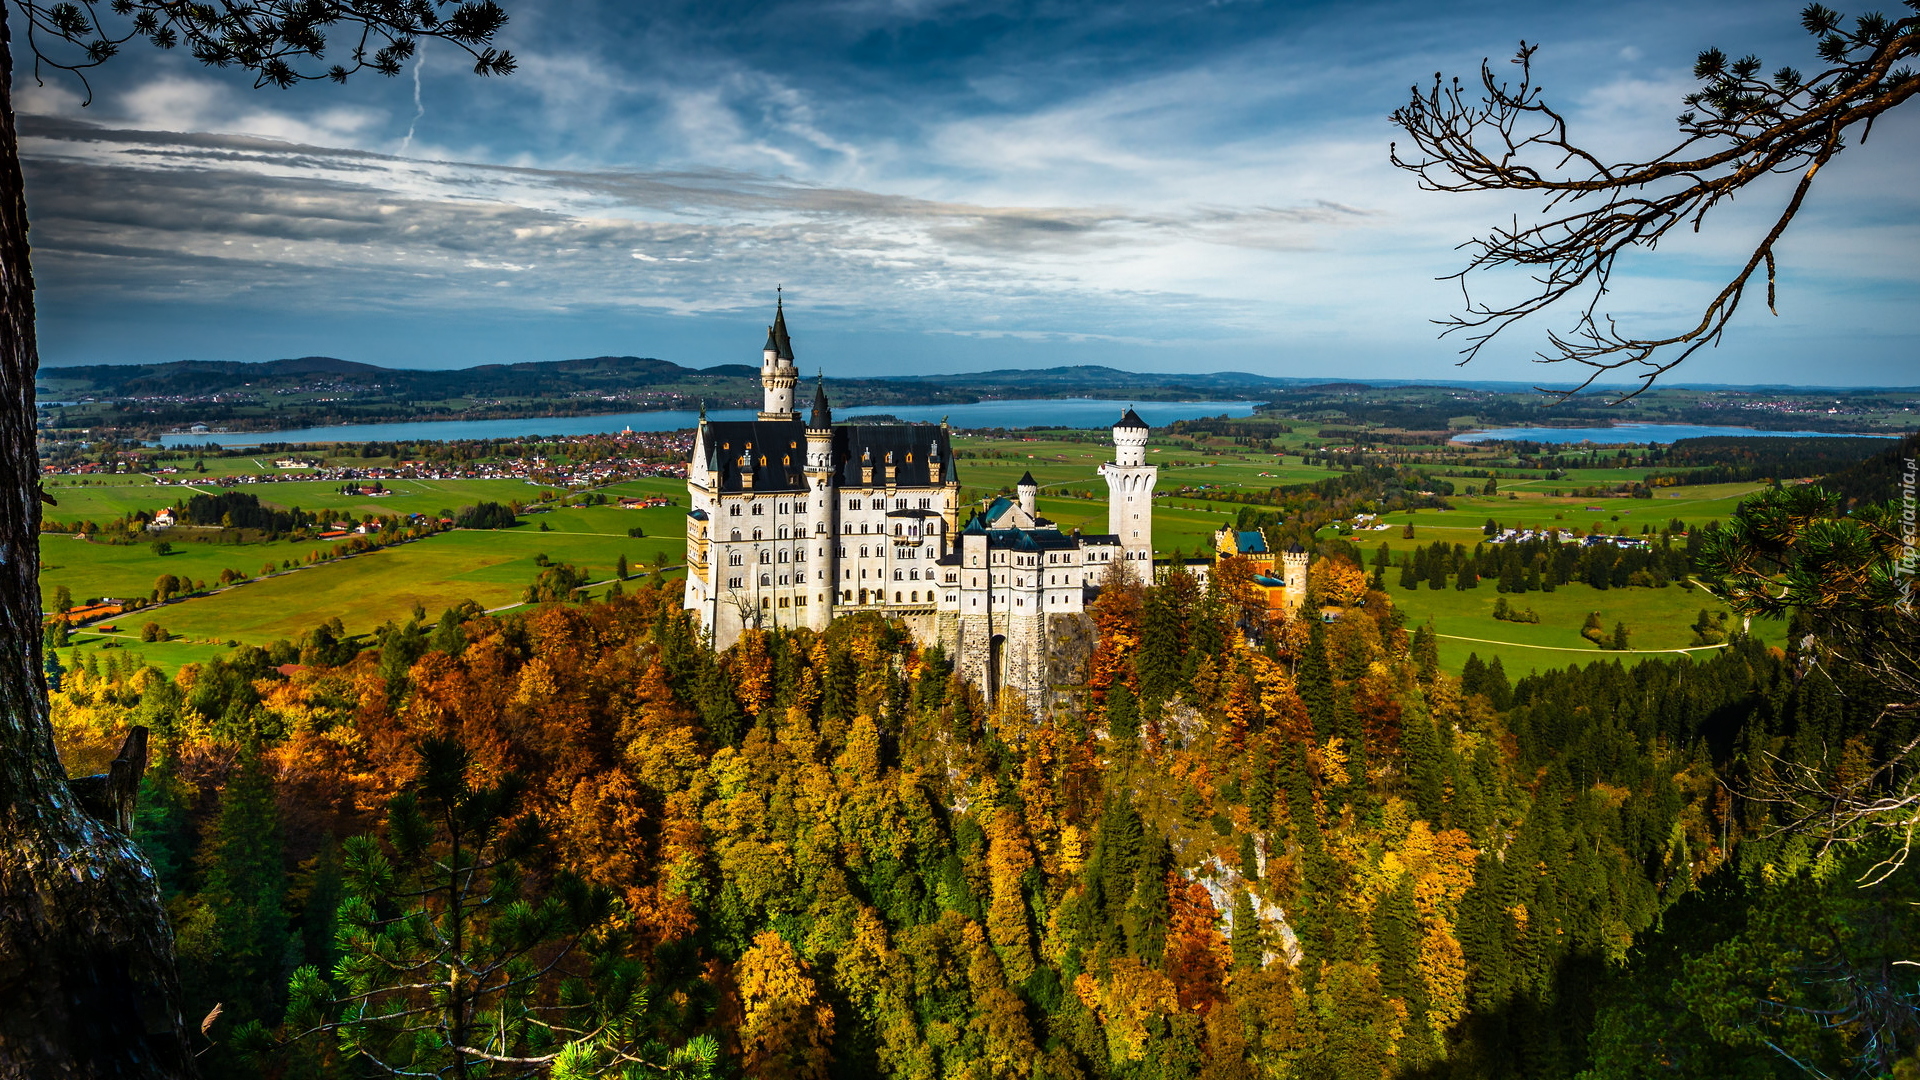 Jesień, Wzgórze, Lasy, Zamek Neuschwanstein, Drzewa, Pola, Bawaria, Niemcy